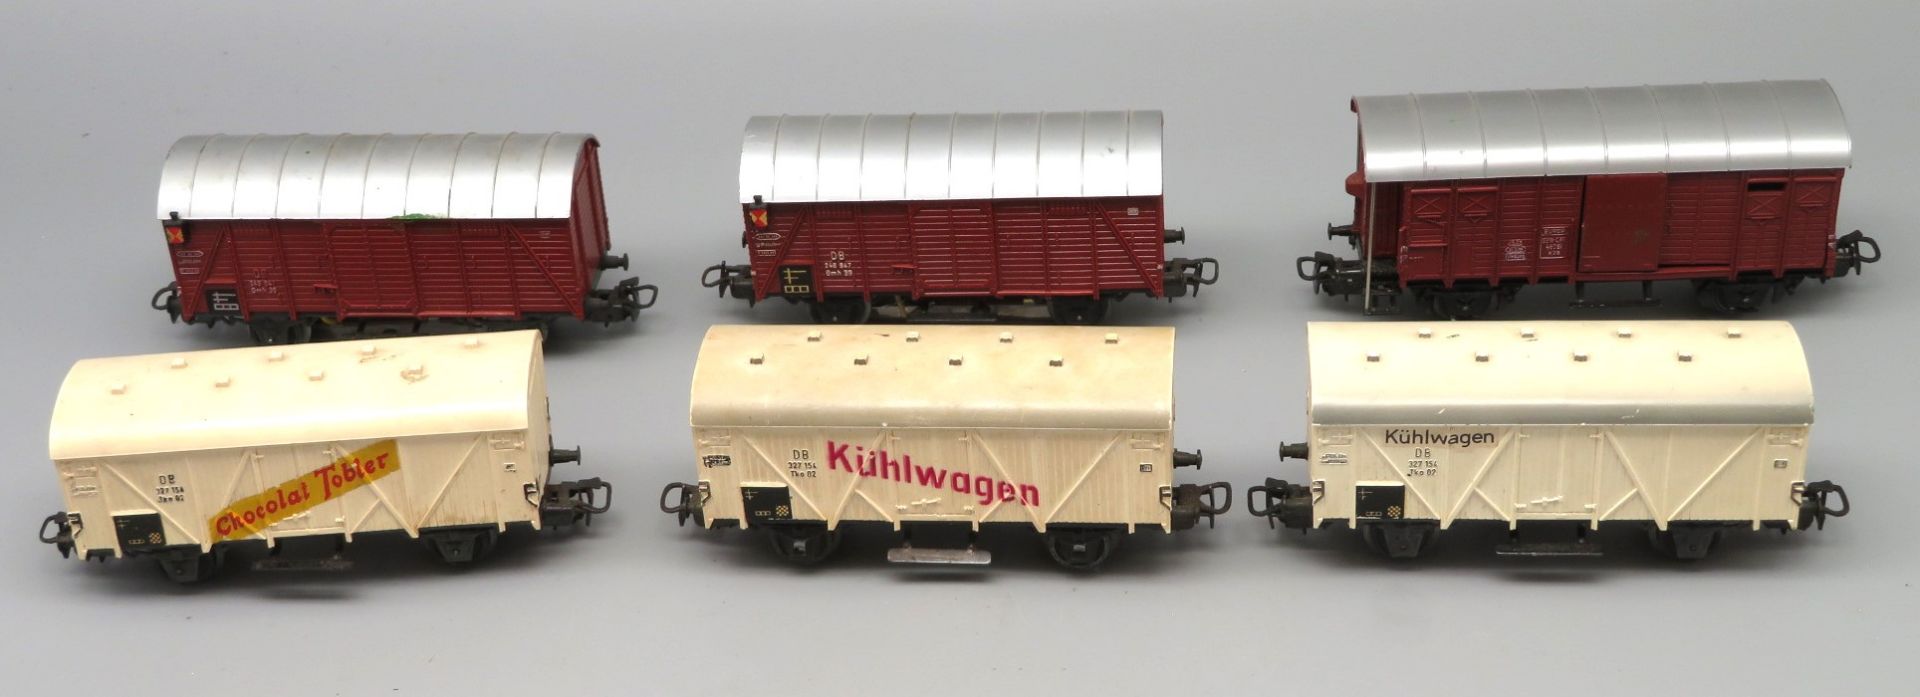 6 diverse Güterwagen, Märklin, Spur H, analog, 3 x Art.Nr. 327154 und 3 x Art.Nr. 248347, l 120 mm.